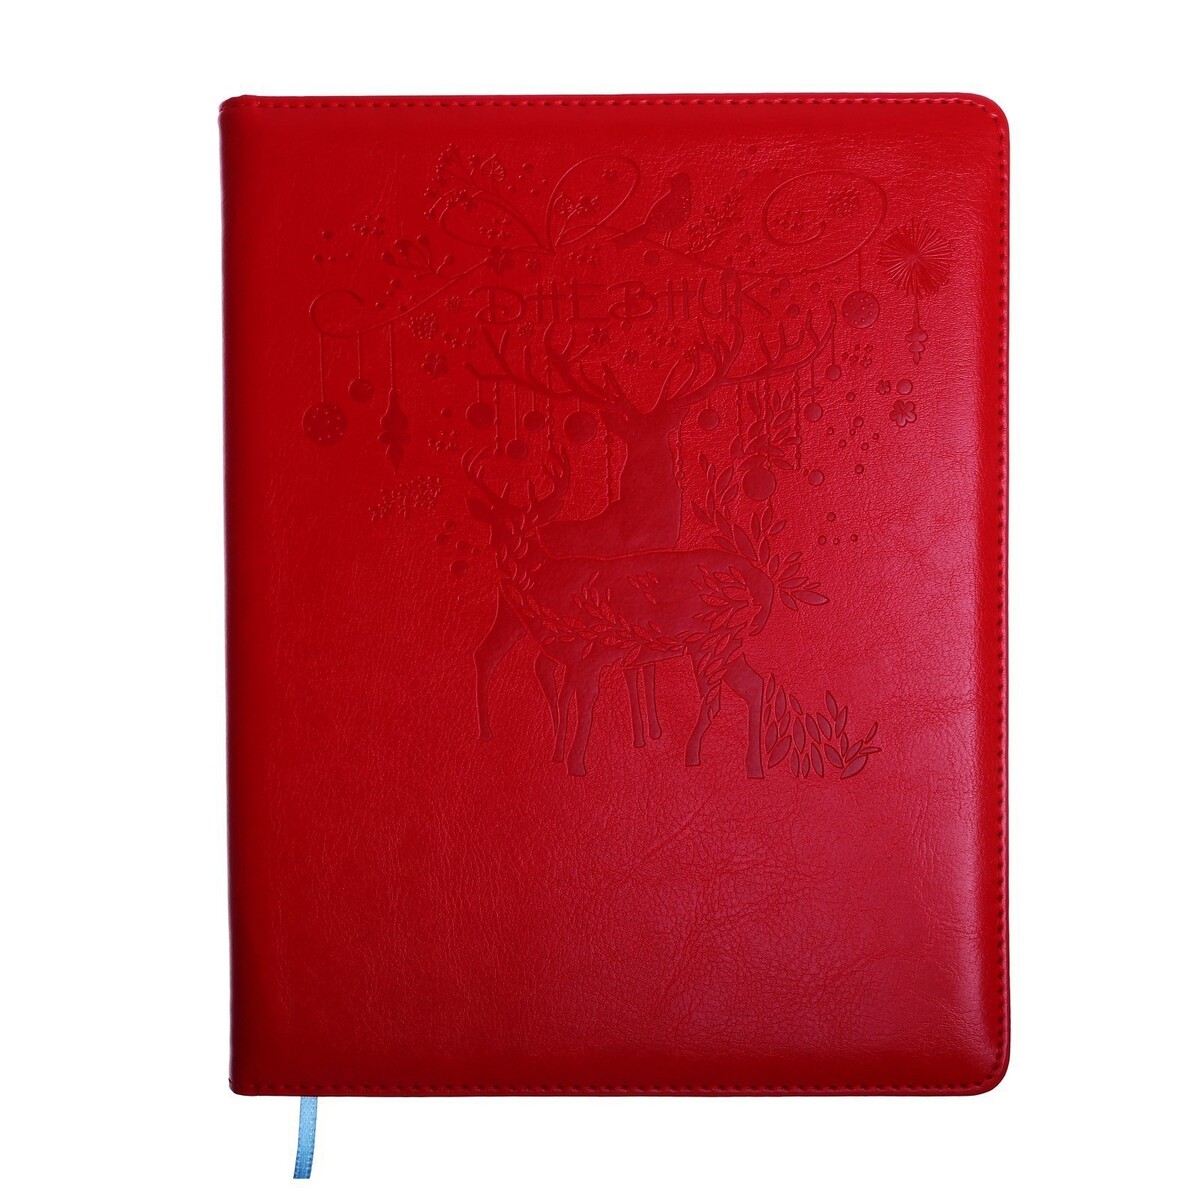 Дневник школьный, 5-11 класс, обложка пвх школьный дневник зайка